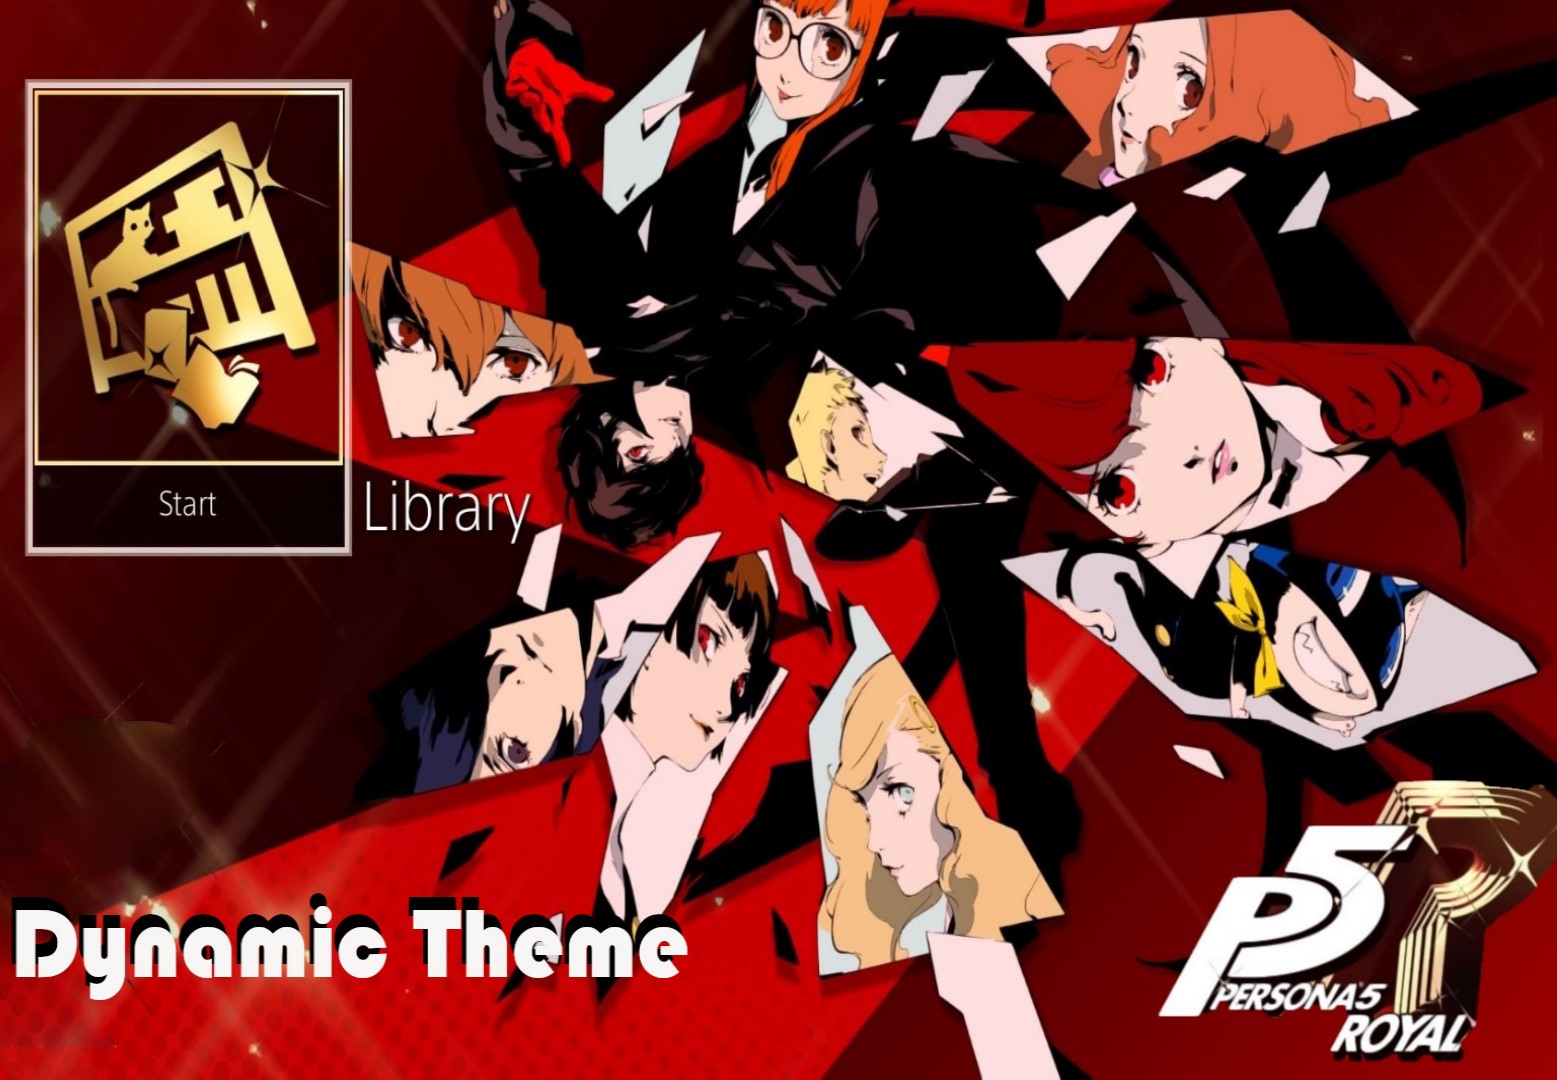 Persona 5 Royal - Phantom Thieves Dynamic Theme DLC EU PS4 CD Key